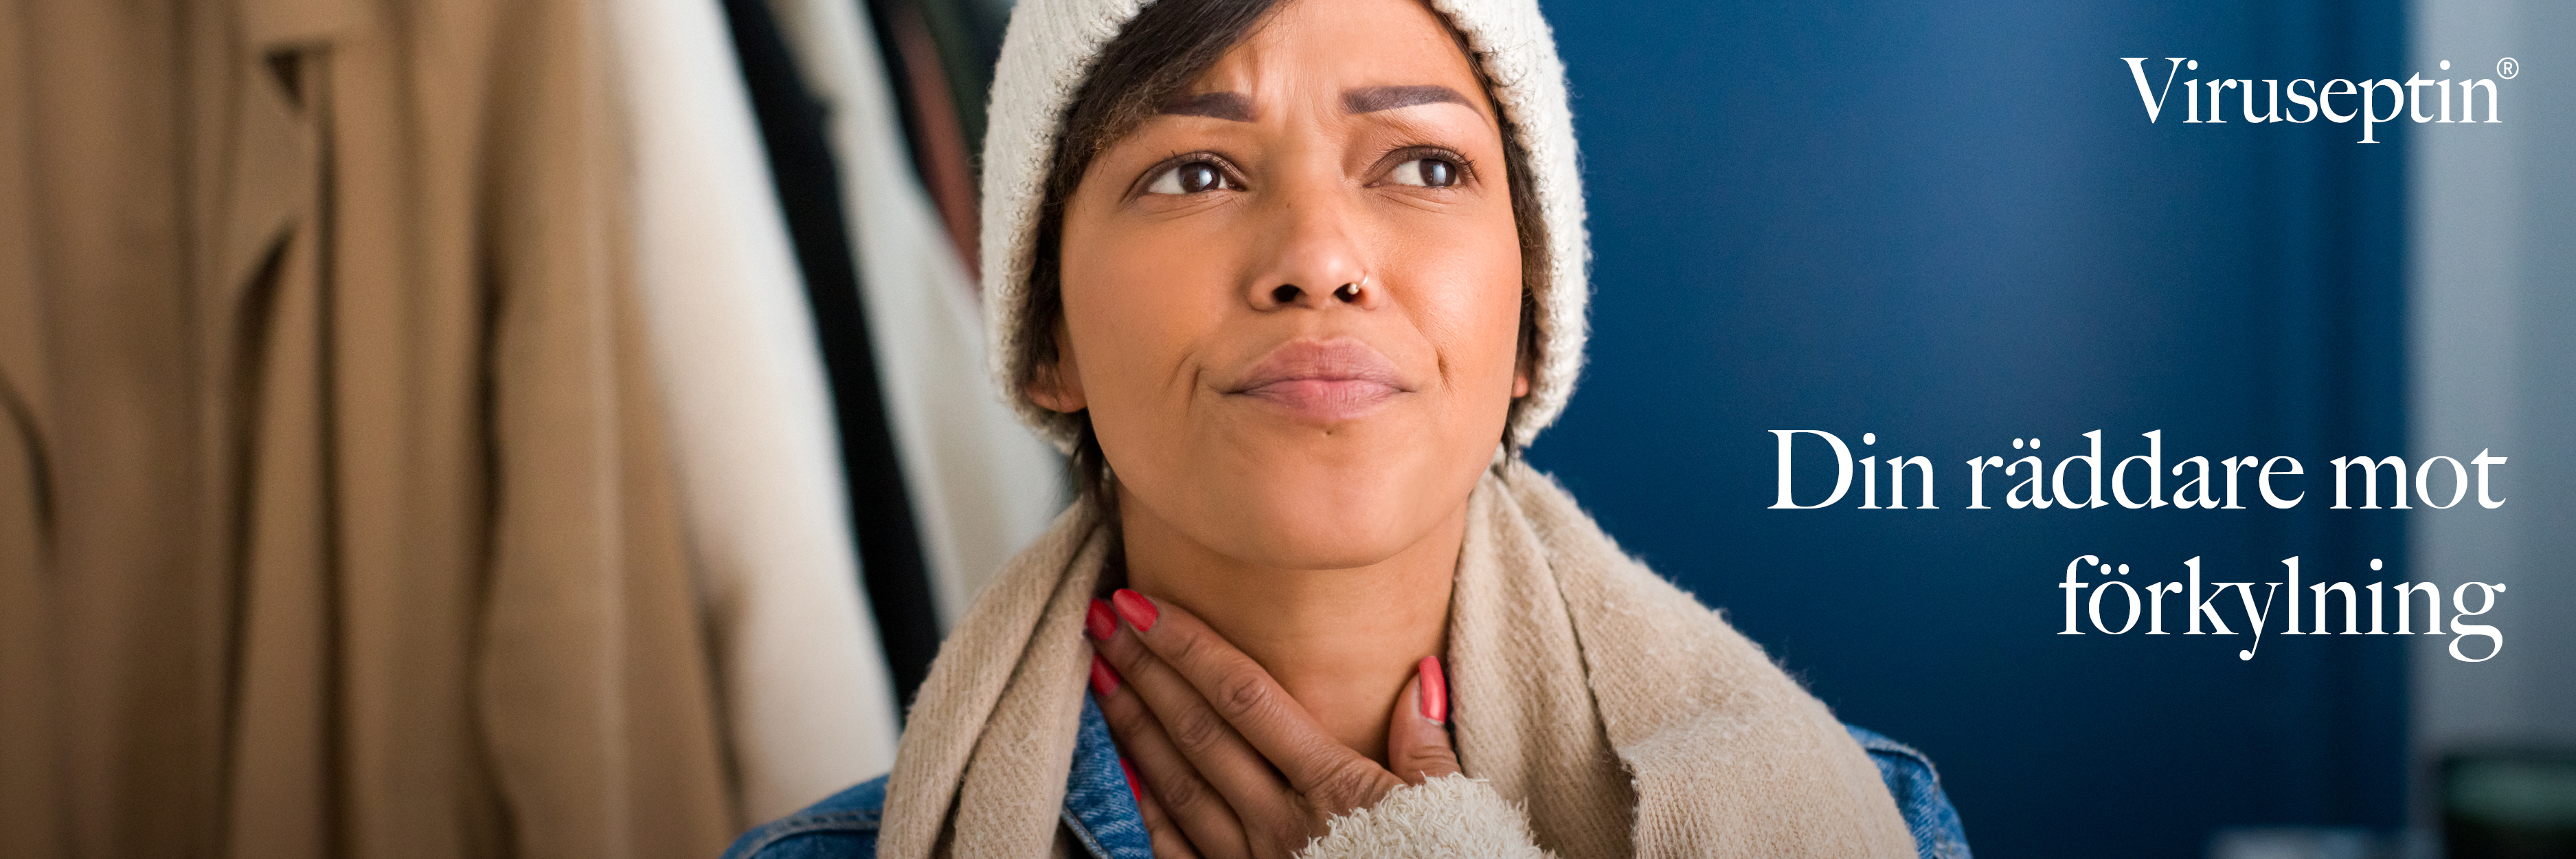 Kvinna som ser besvärad ut och tar sig för halsen med texten "Viruseptin - Din räddare mot förkylning".